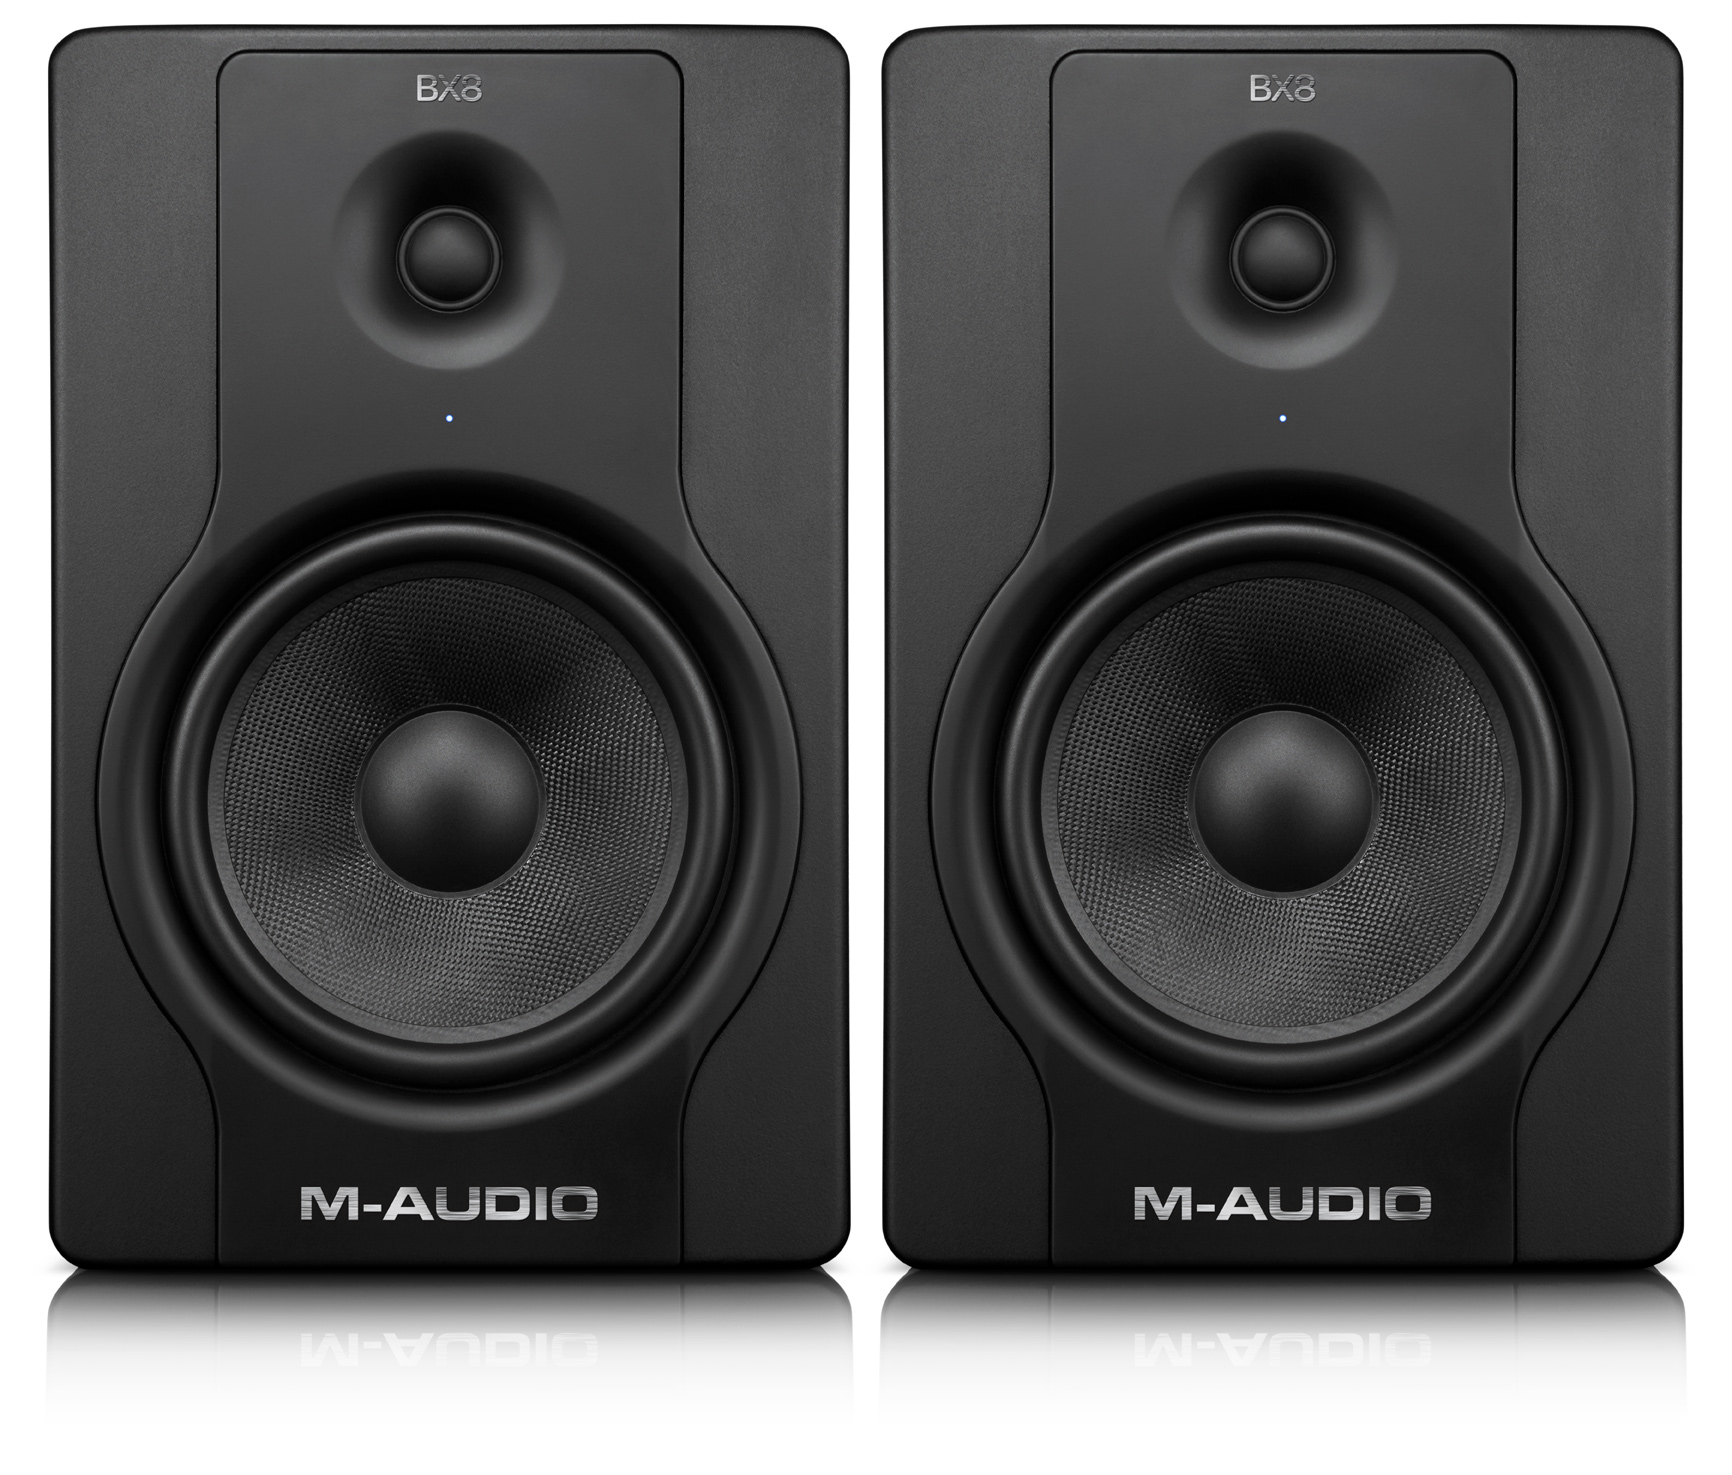 Audio bx. M-Audio bx8 d2. Мониторы m-Audio bx5a Studiophile. Студийные мониторы m-Audio bx5 Studiophile. M-Audio Studiophile SP-bx5a d2.